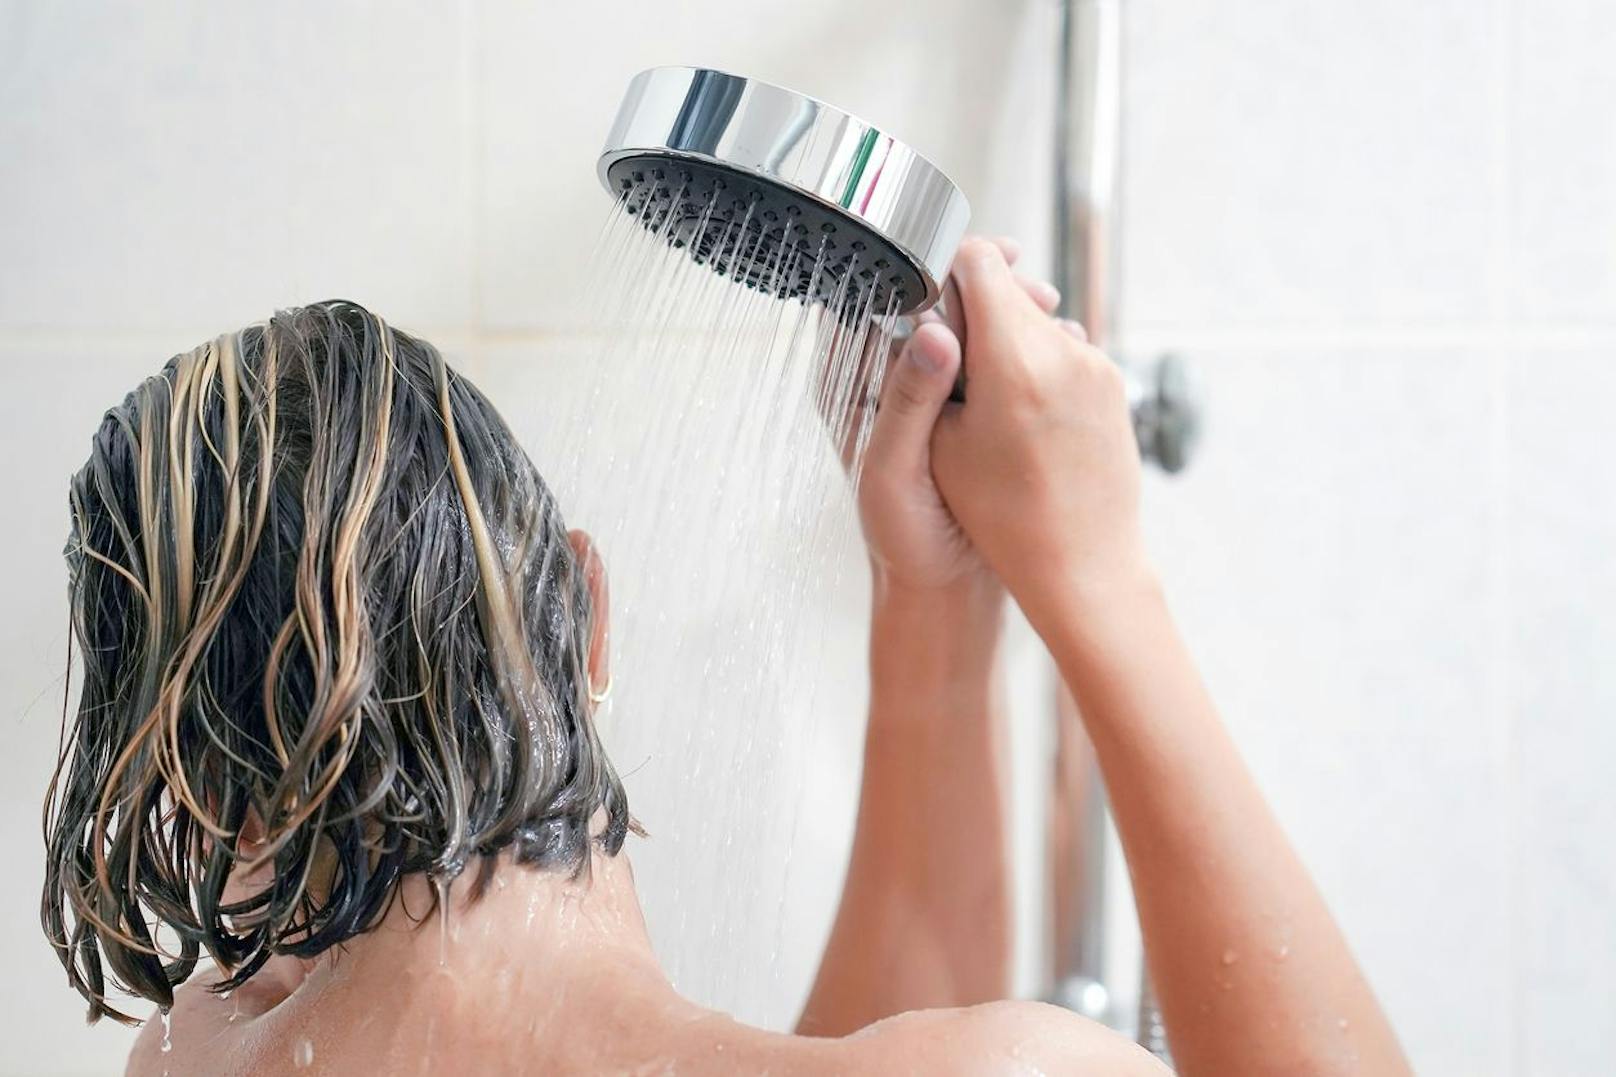 Deinen Bauchnabel kannst du am besten unter der Dusche säubern. Nach außen gewölbte Nabel sind einfach zu reinigen. Es reicht förmlich ein warmer Duschstrahl, der danach mit einem Tuch trocken gewischt wird. Achte darauf, dass keine Feuchtigkeit an deinen Hautfalten haften bleibt.